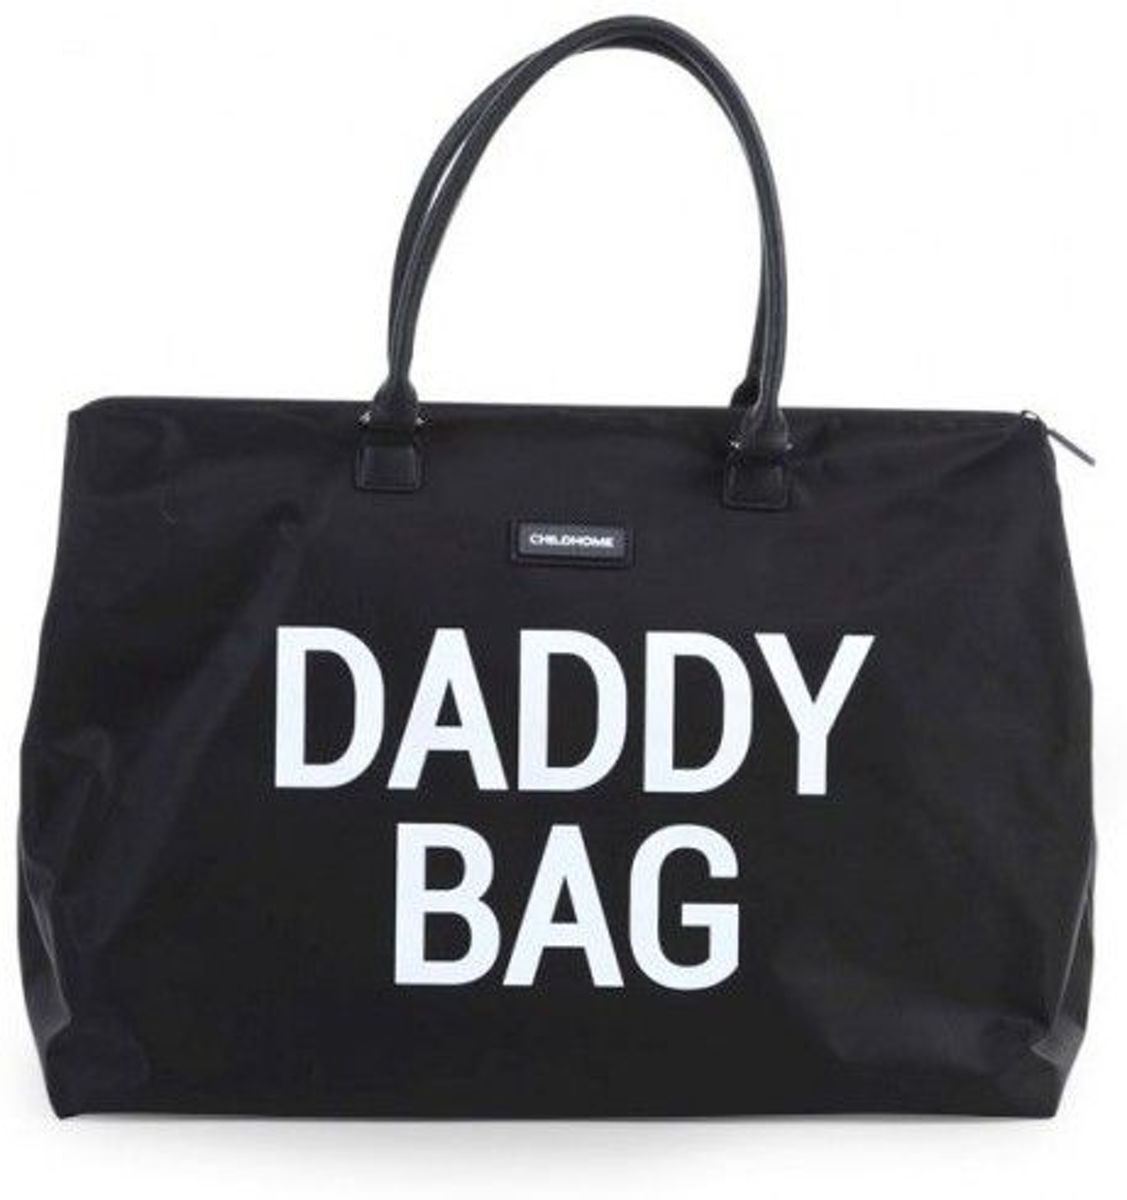 Childhome - Daddy bag groot - zwart zwart